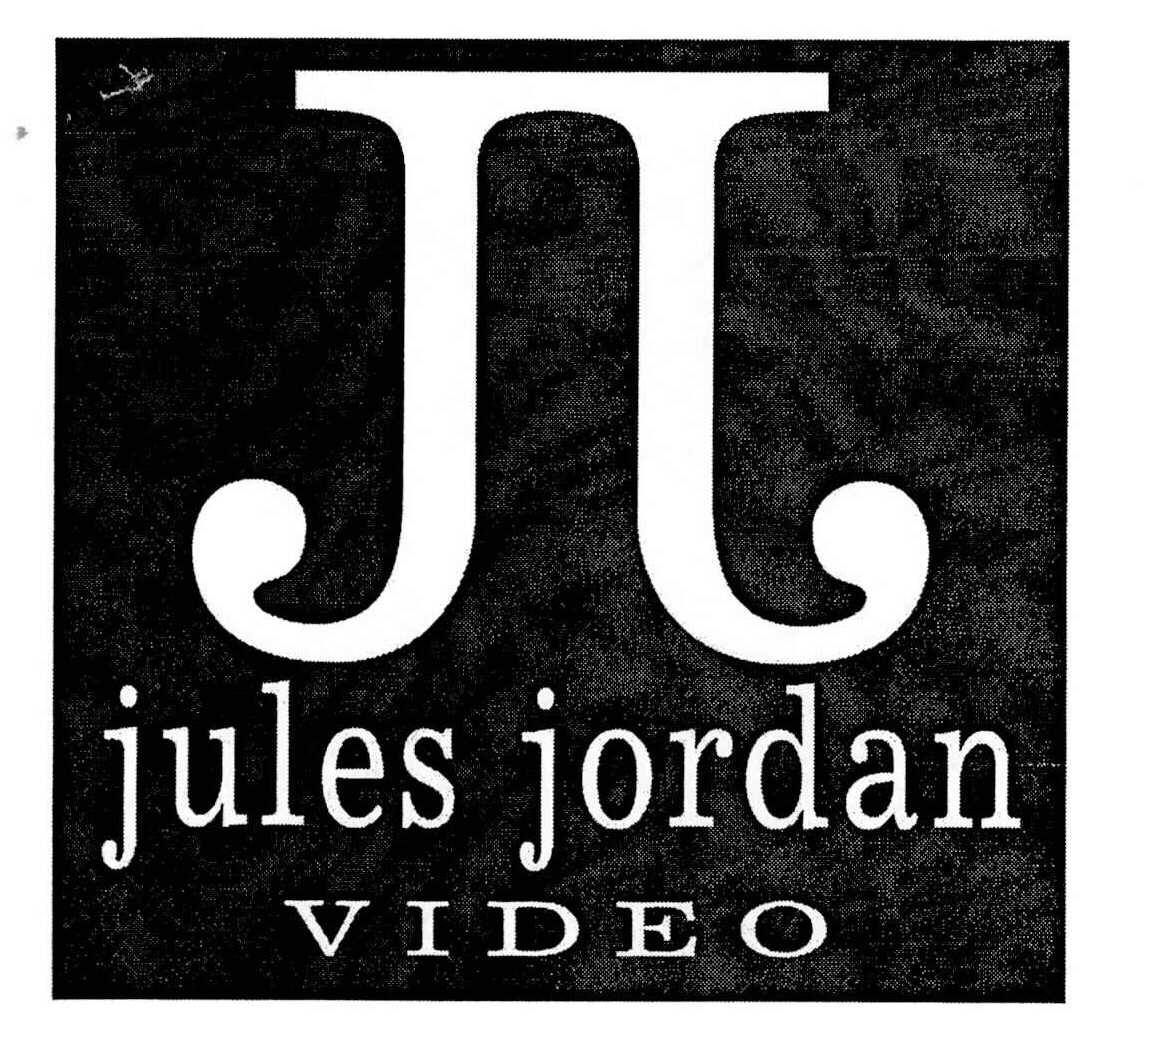 Who is jules jordan